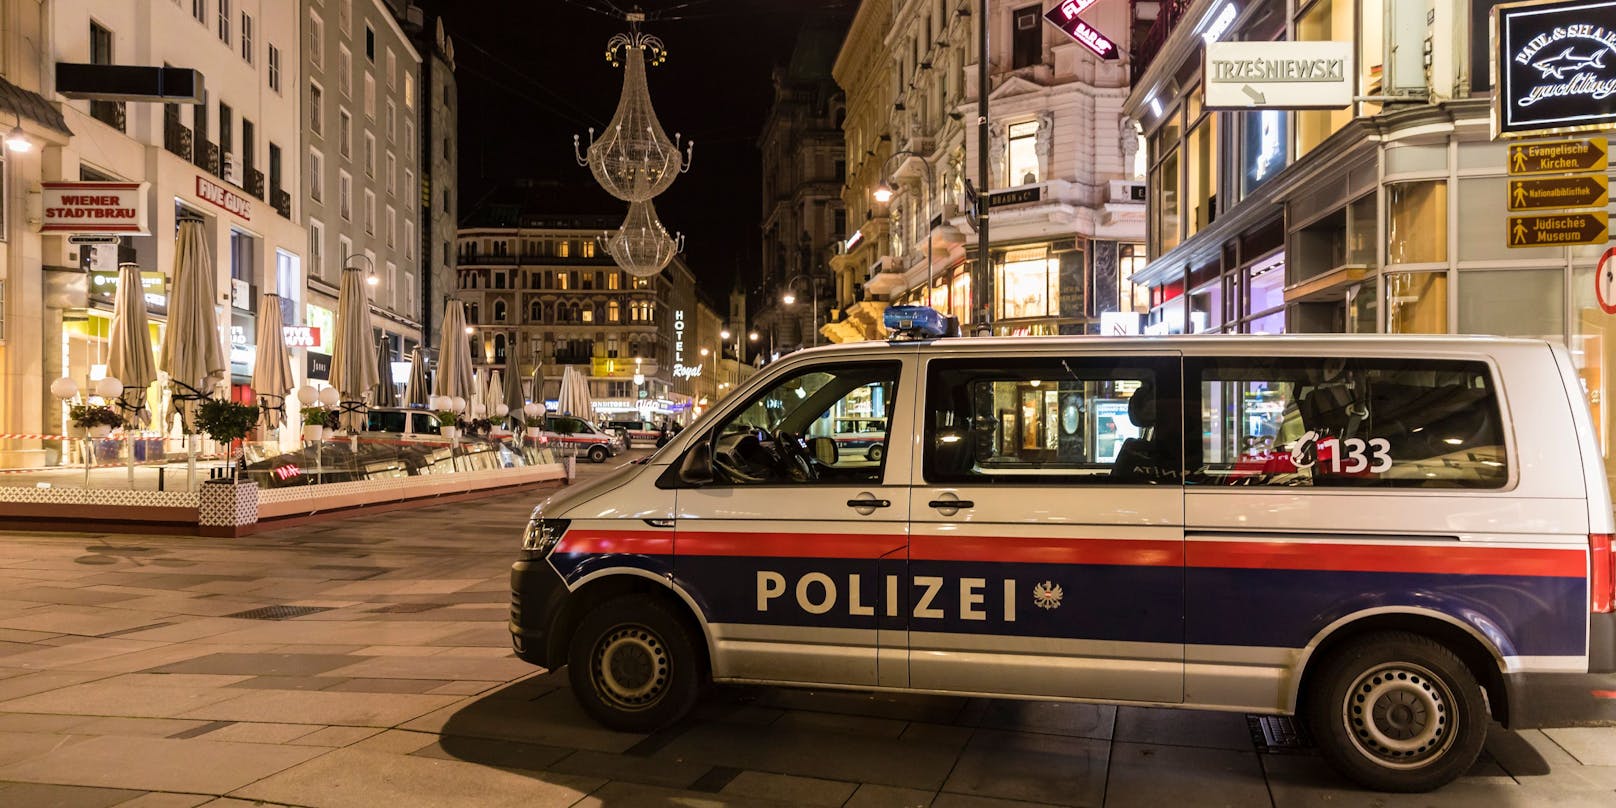 In der Nacht auf Sonntag hat eine Männer-Gruppe mehrere Passanten in Wien bedroht, geschlagen und ausgeraubt. (Symbolbild)